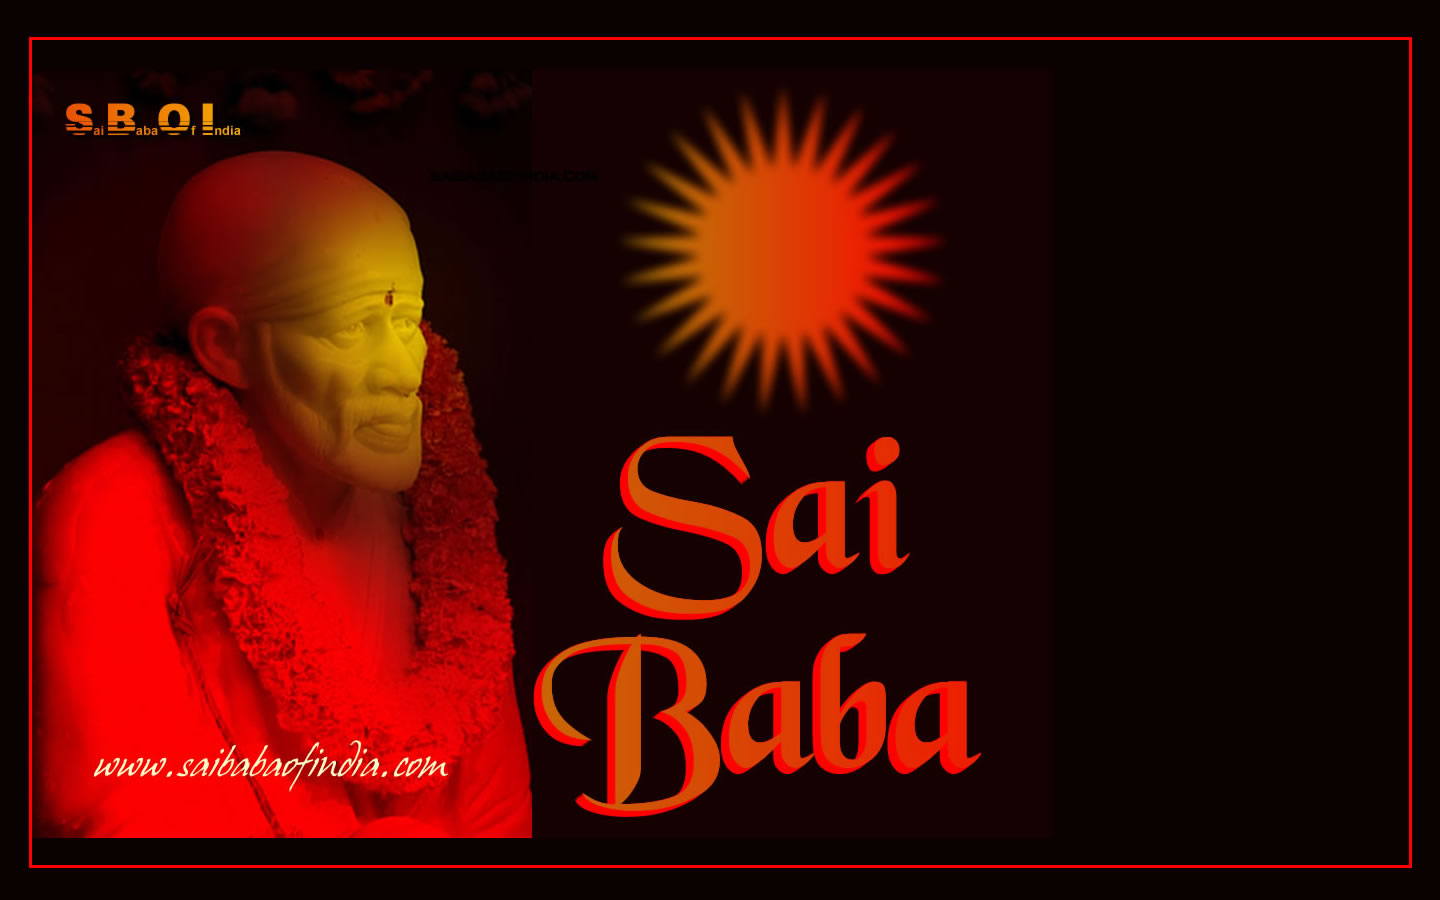 Shirdi Sai Baba Exclusive WallPapers - free download- Desktop ...